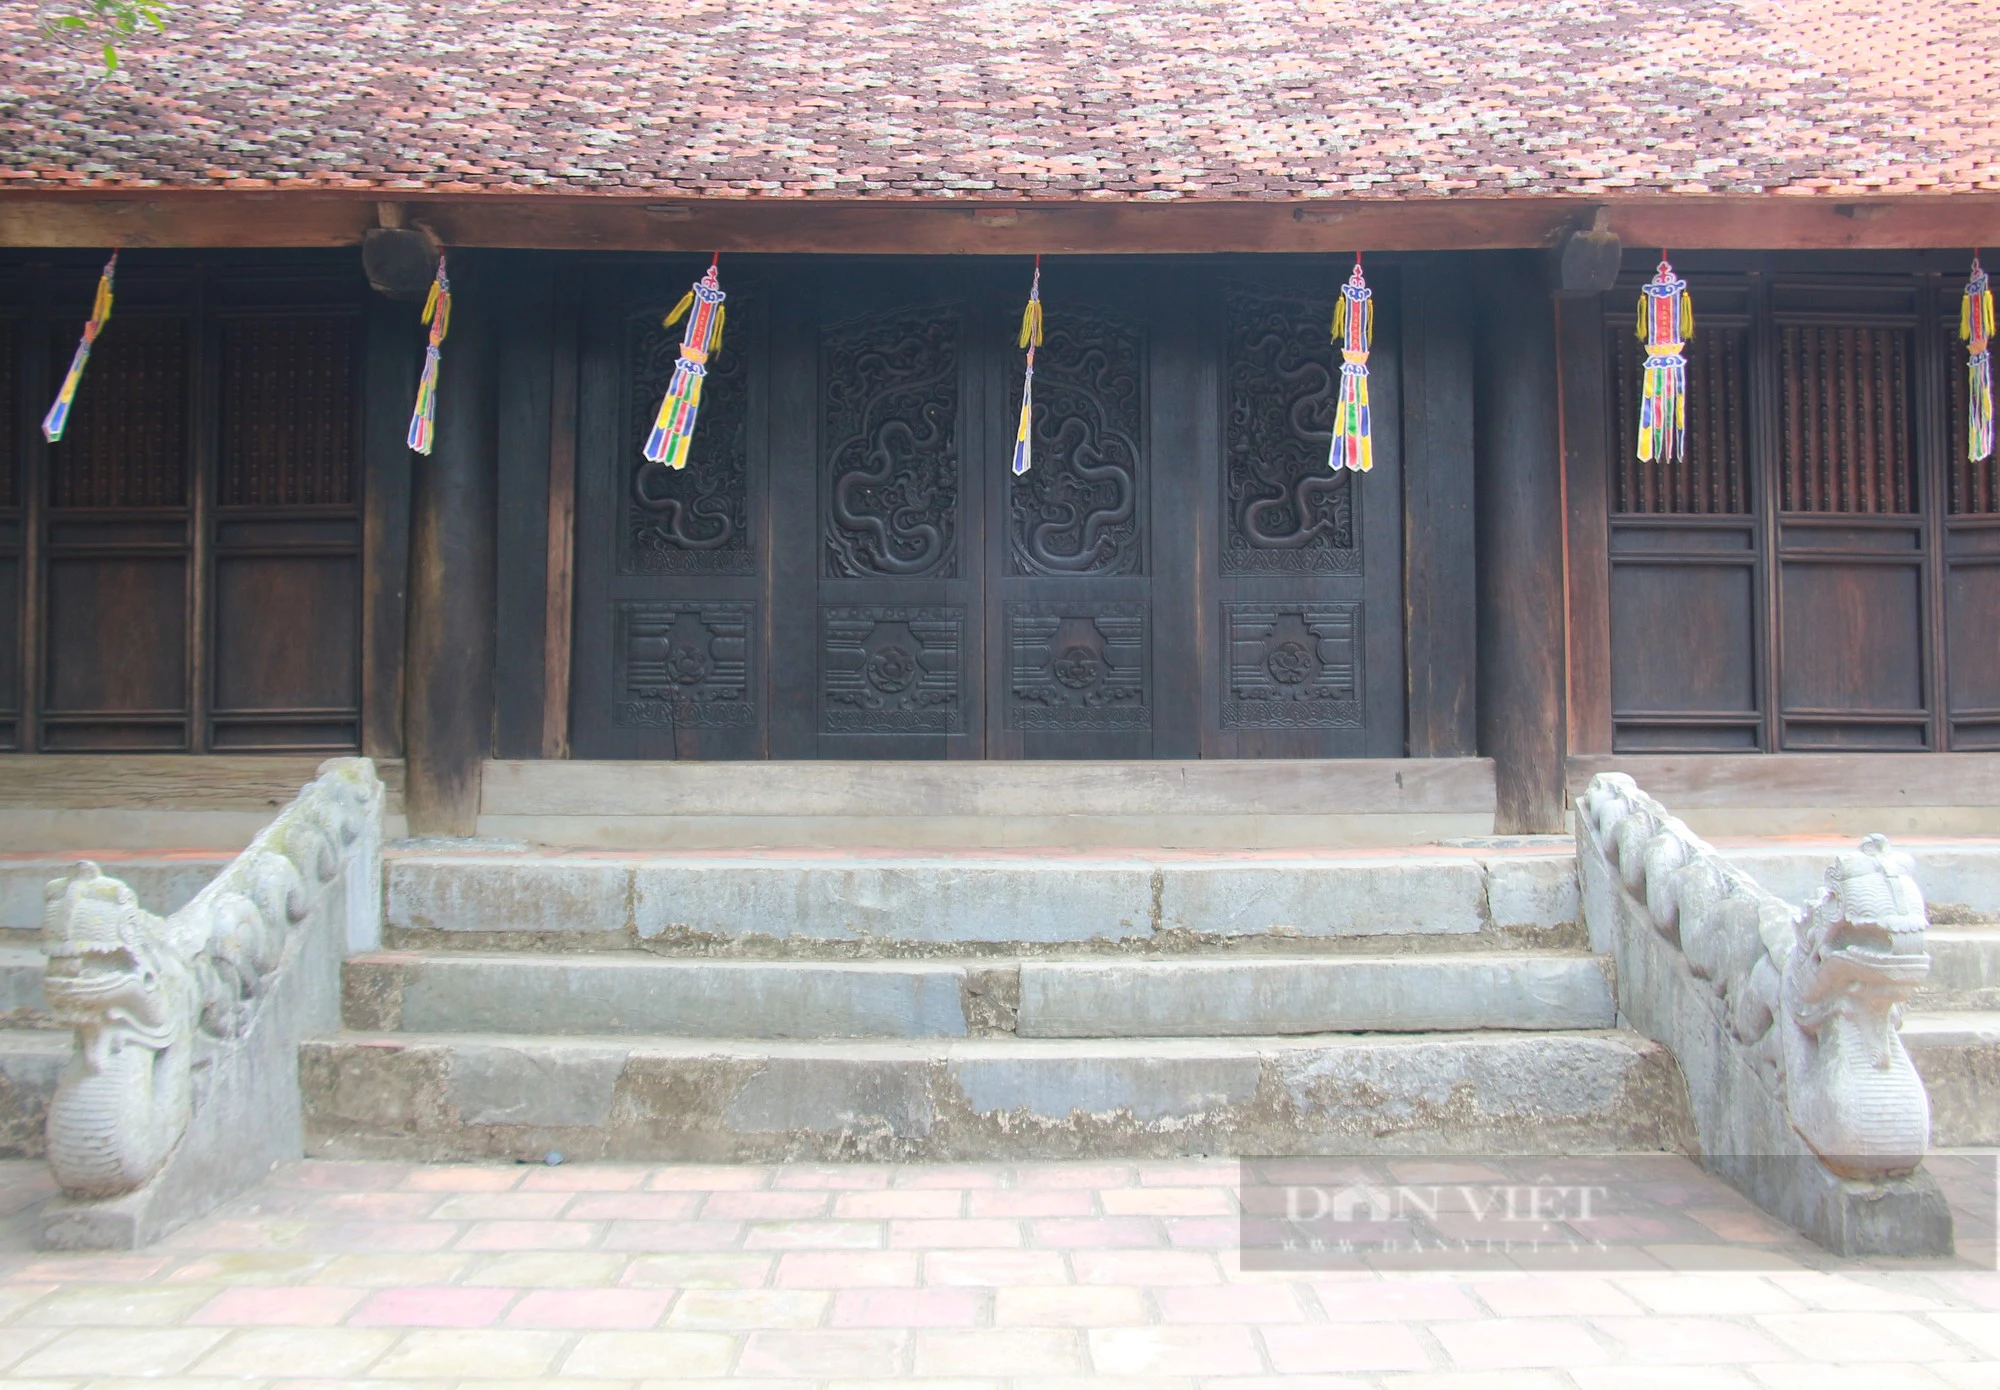 Bảo vật quốc gia ở chùa Phổ Minh của Nam Định là bộ cánh cửa 4 cánh, ai ngắm cũng trầm trồ- Ảnh 1.